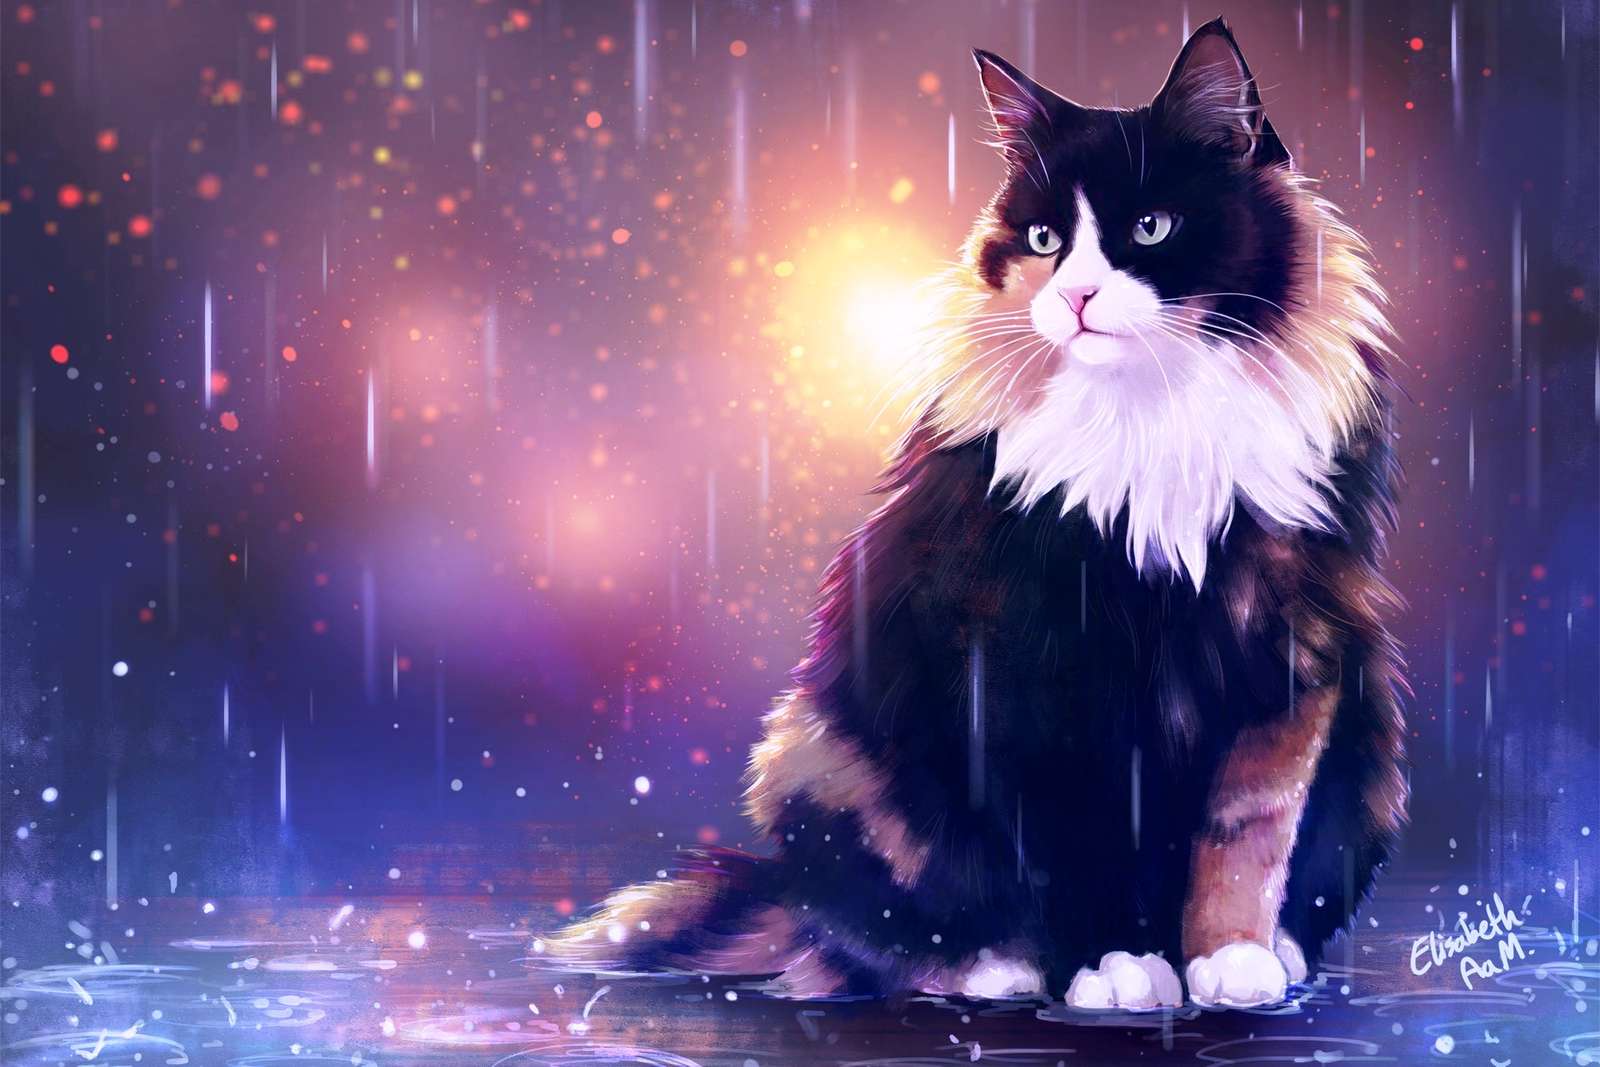 cat in the rain online puzzle